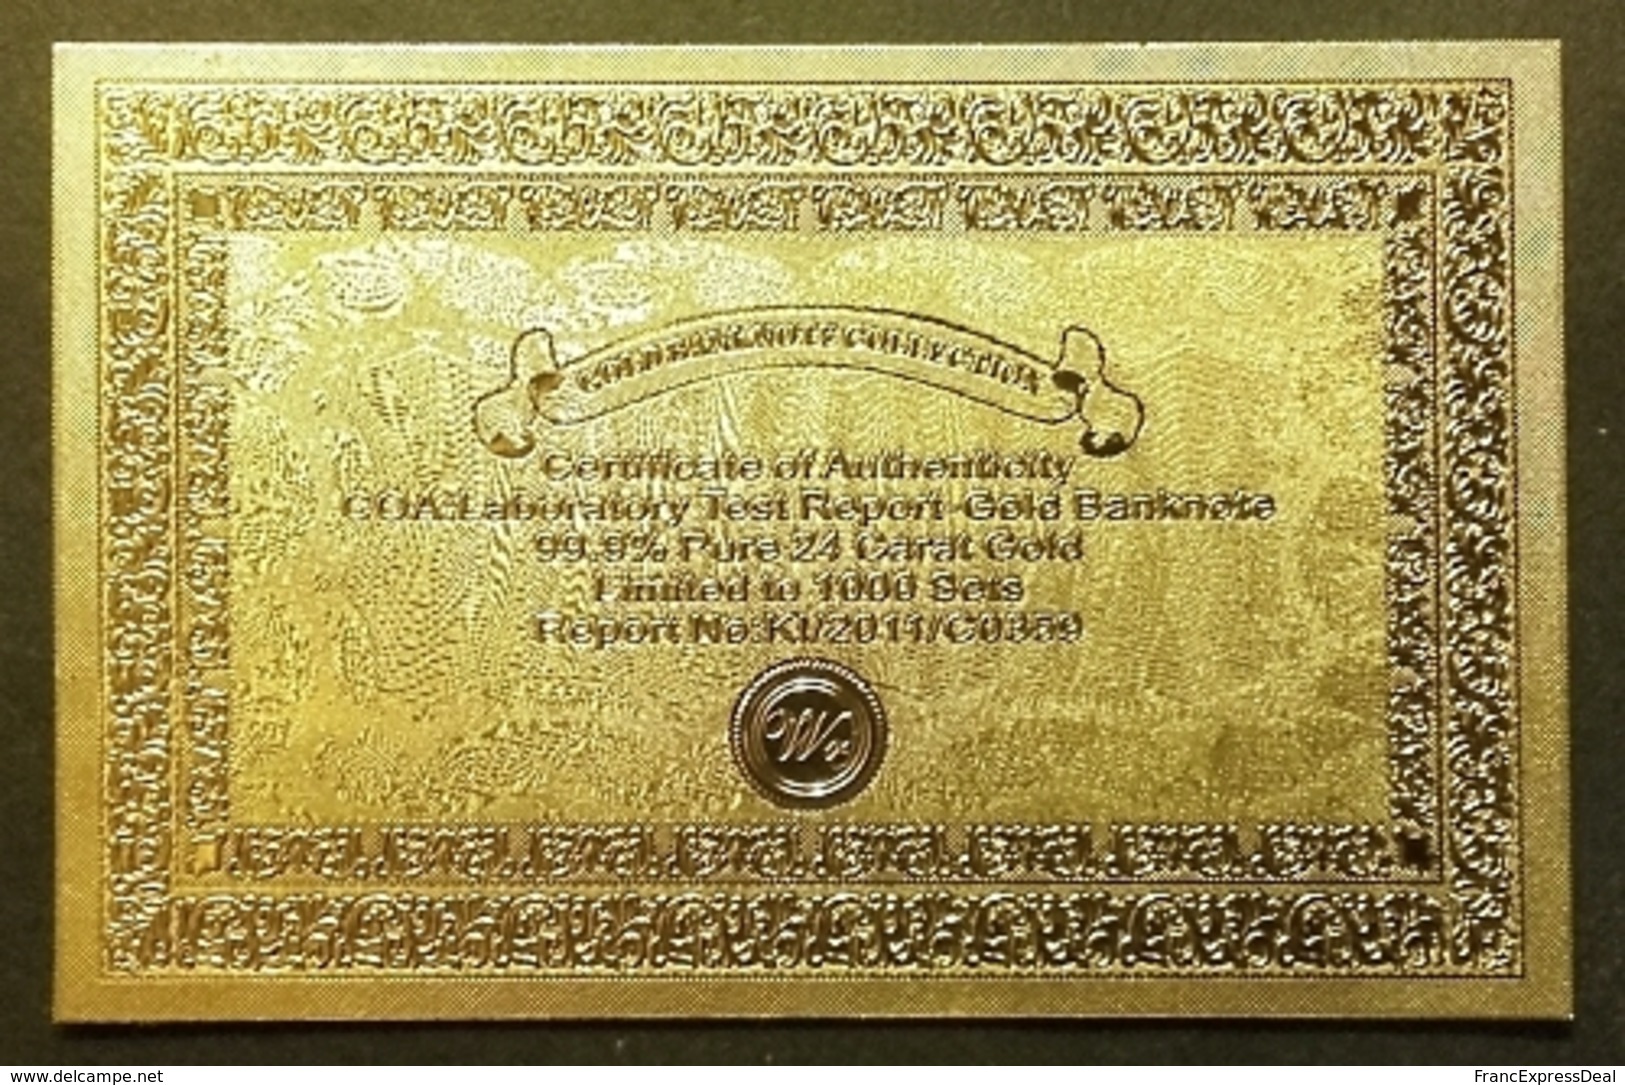 Set de 6 Billets plaqués OR Couleur  + Certificat ! (Color GOLD Plated Banknotes) - Brésil Brazil